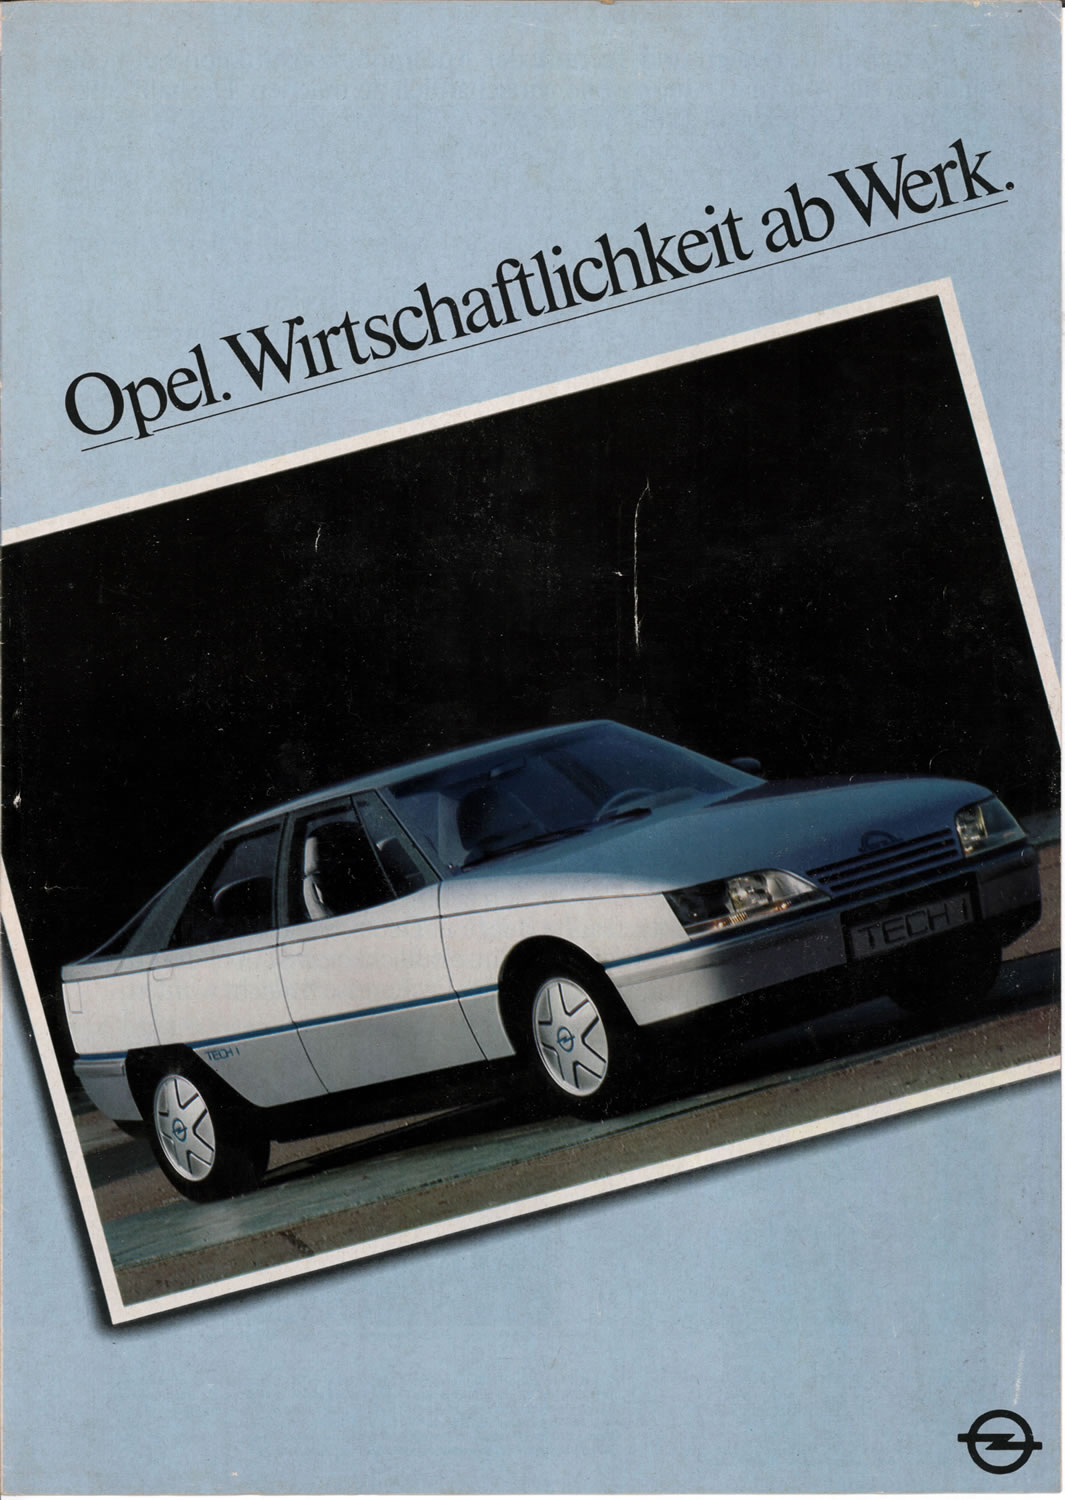 Opel program